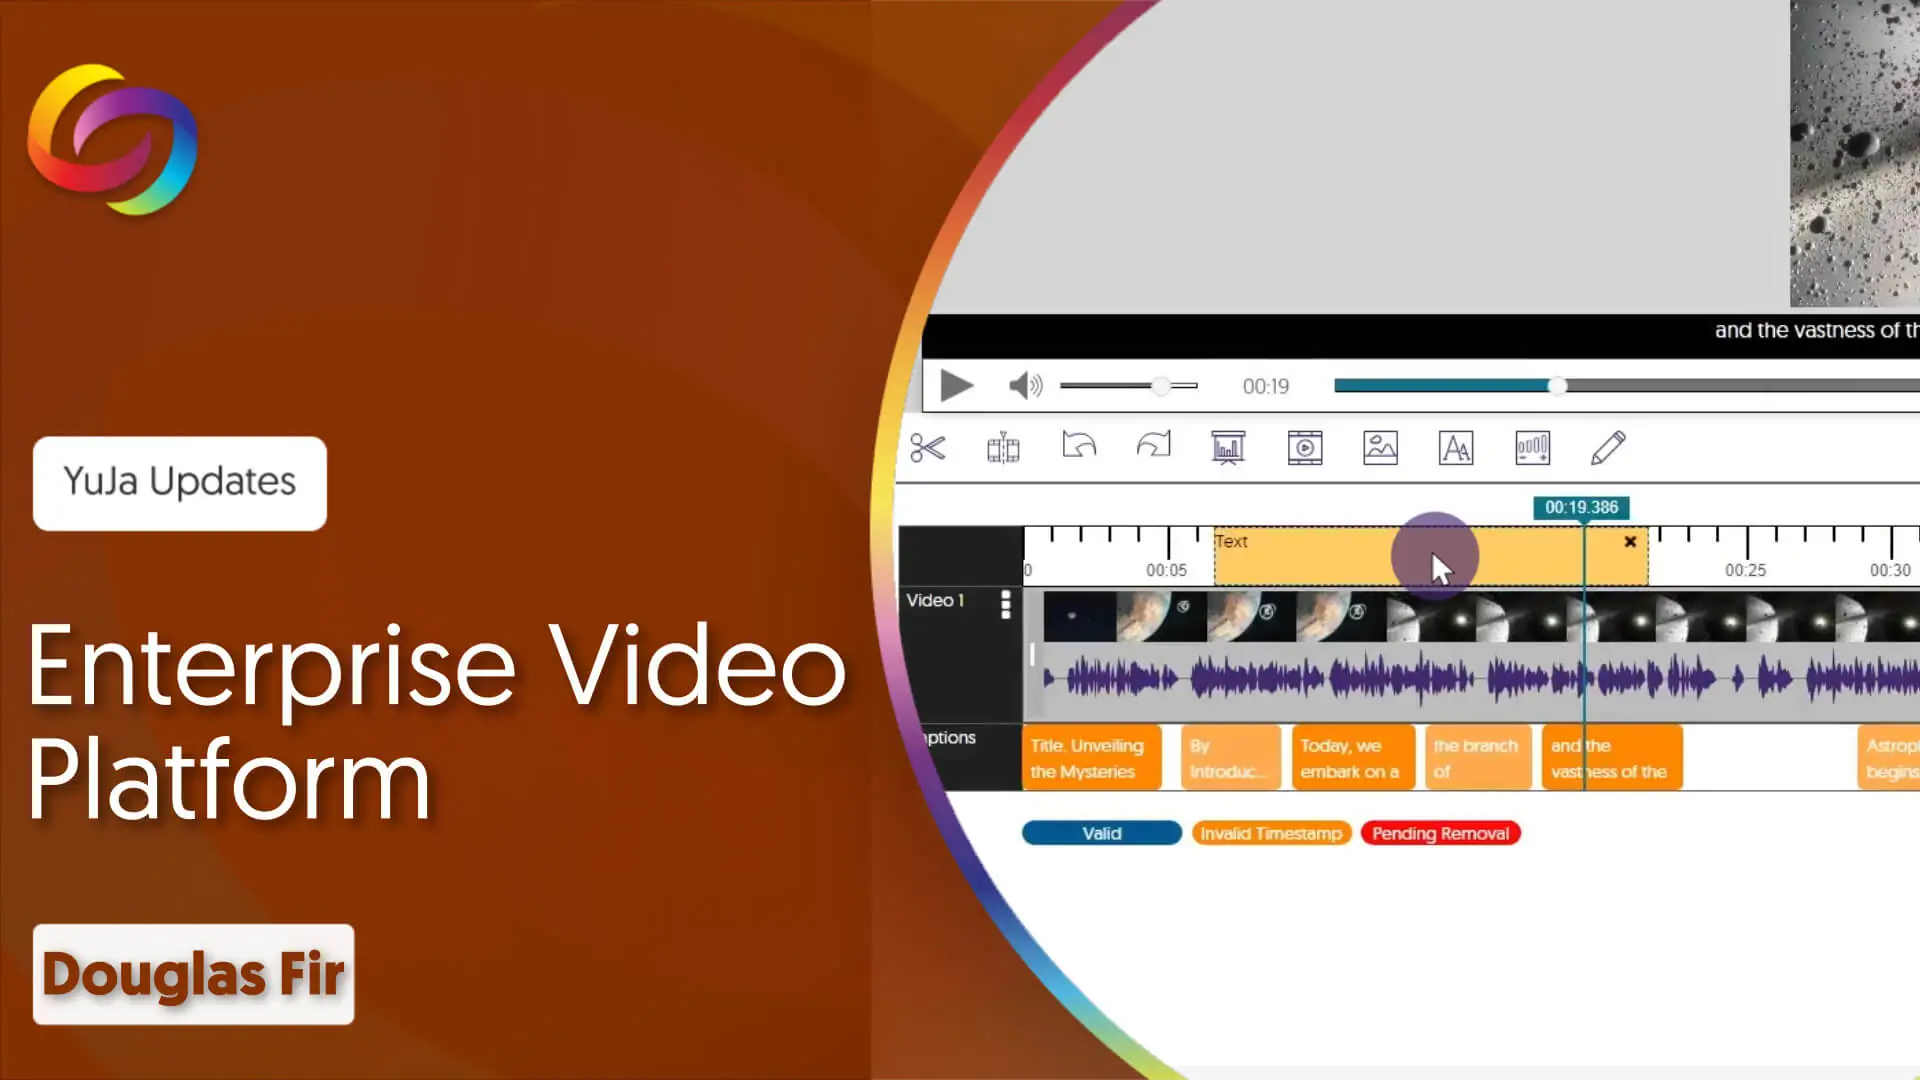 YuJa Enterprise Video Platform - Douglas Fir Release thumbnail.